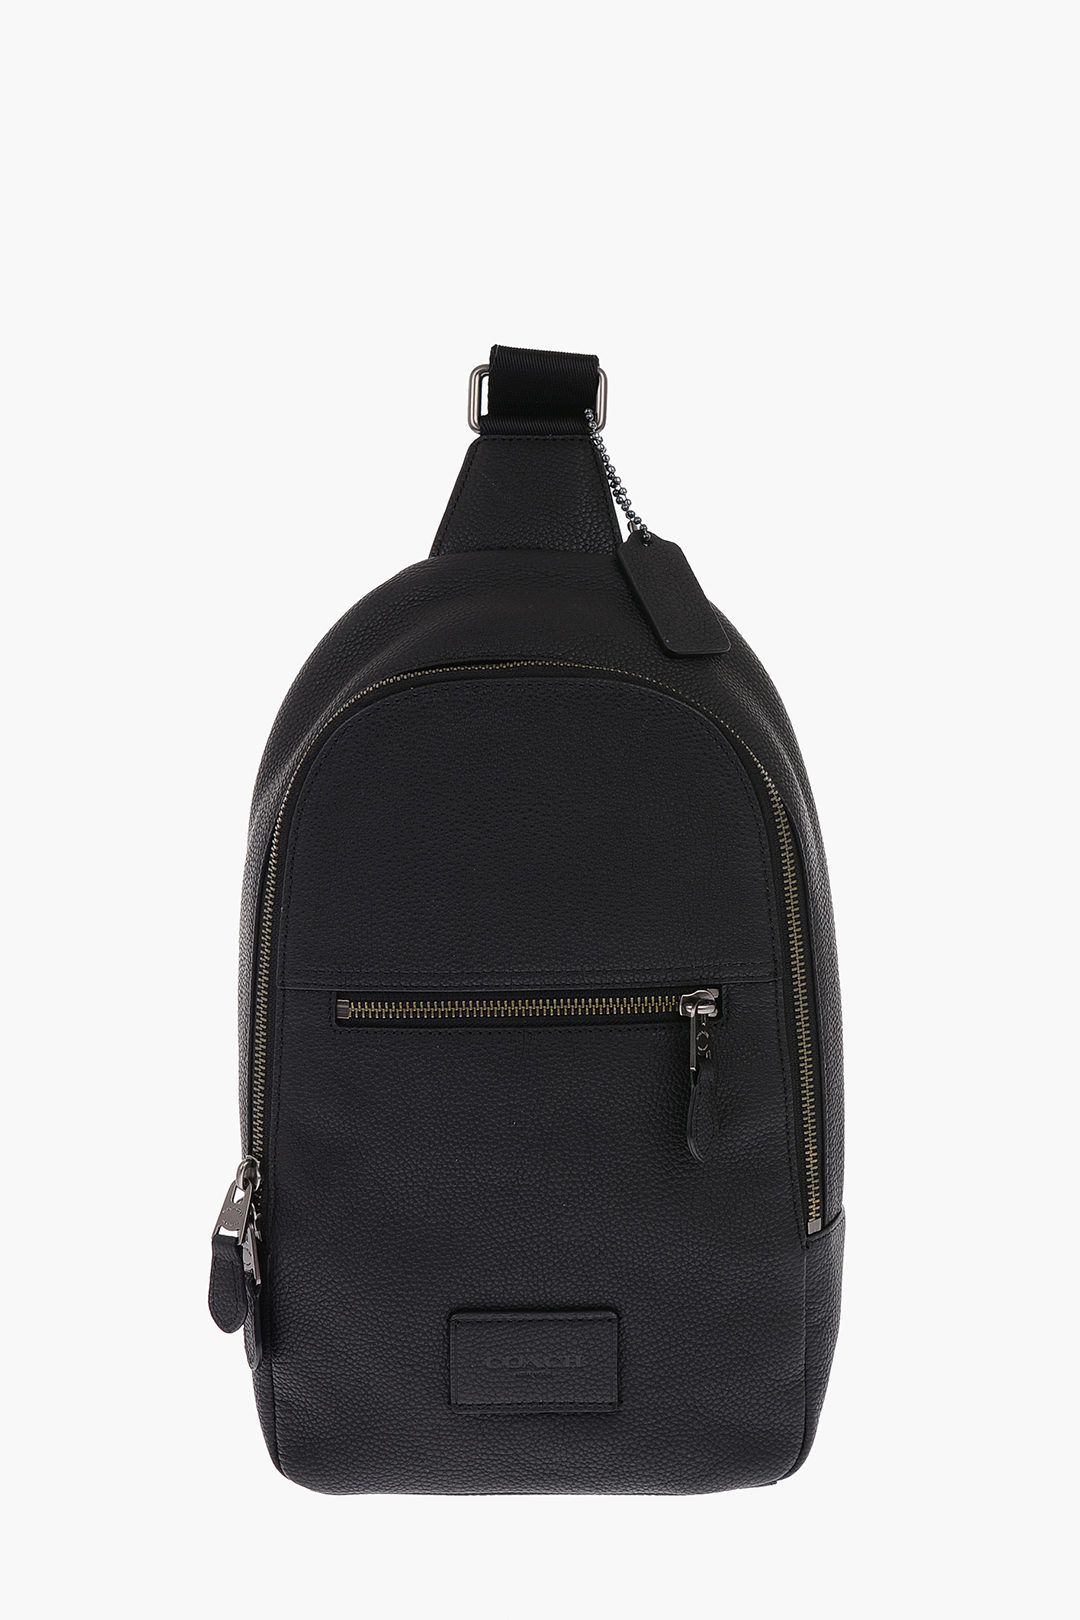 Backpacks/Sling Bags